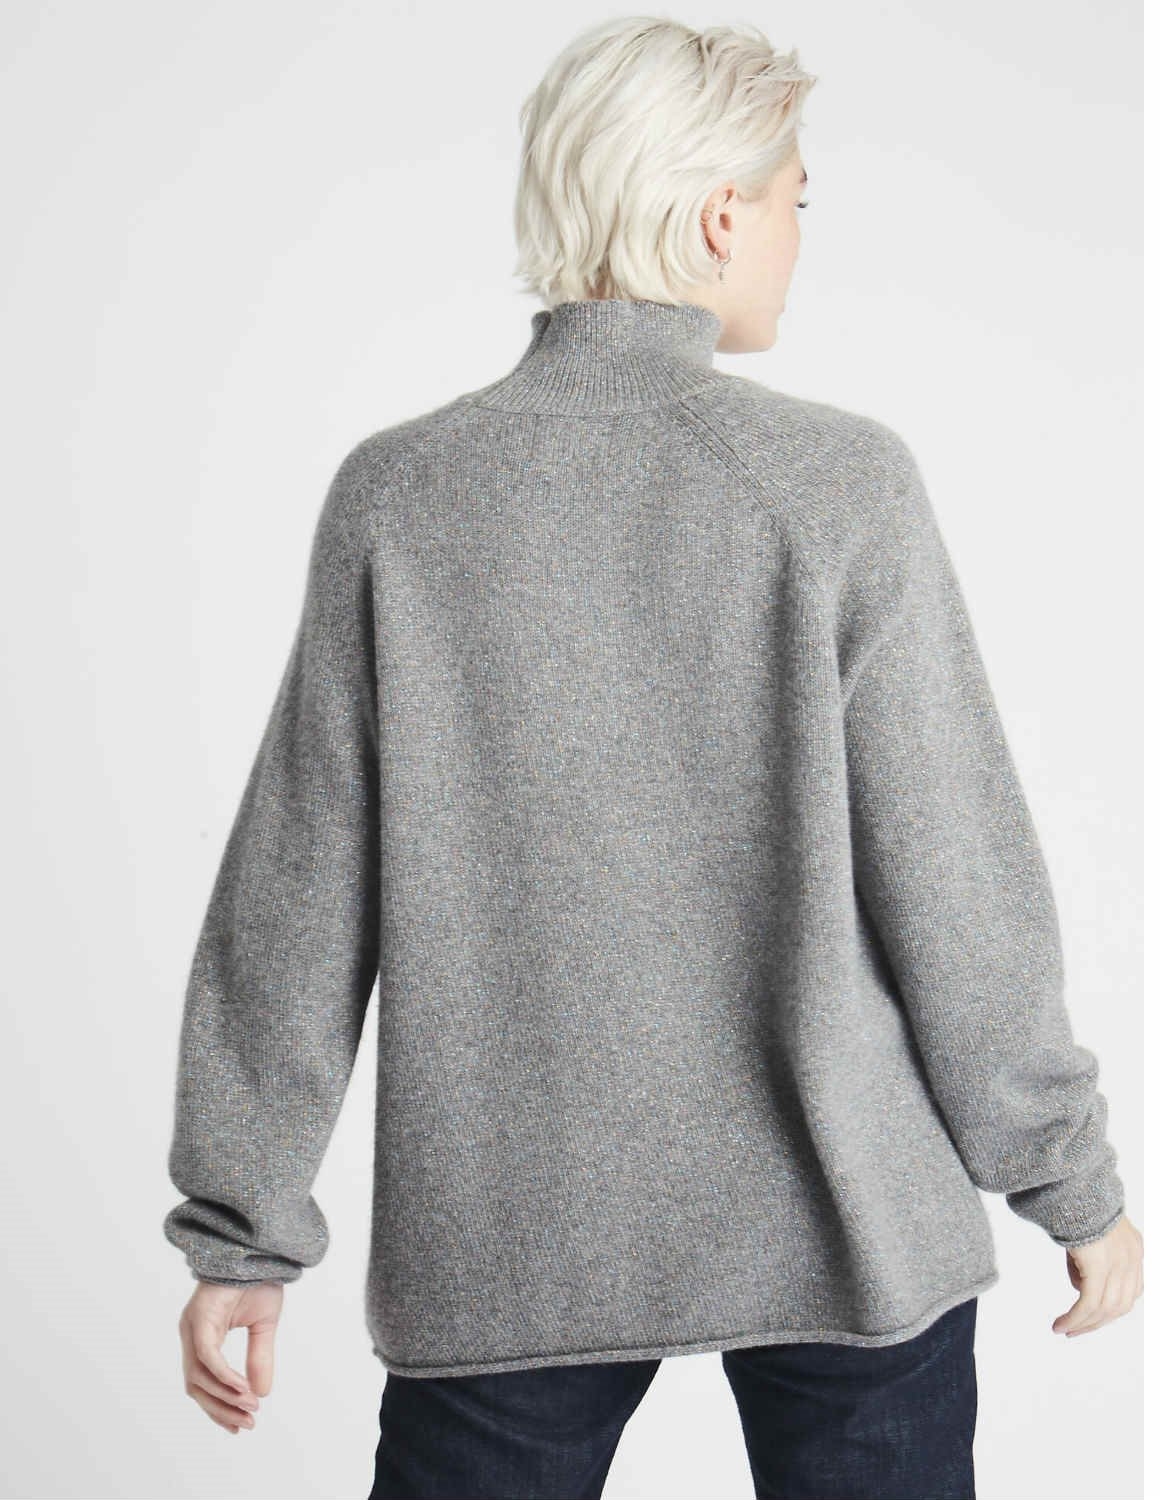 Jumper 1234 Lurex winter cashmere sweater - grey - Feather & Stitch